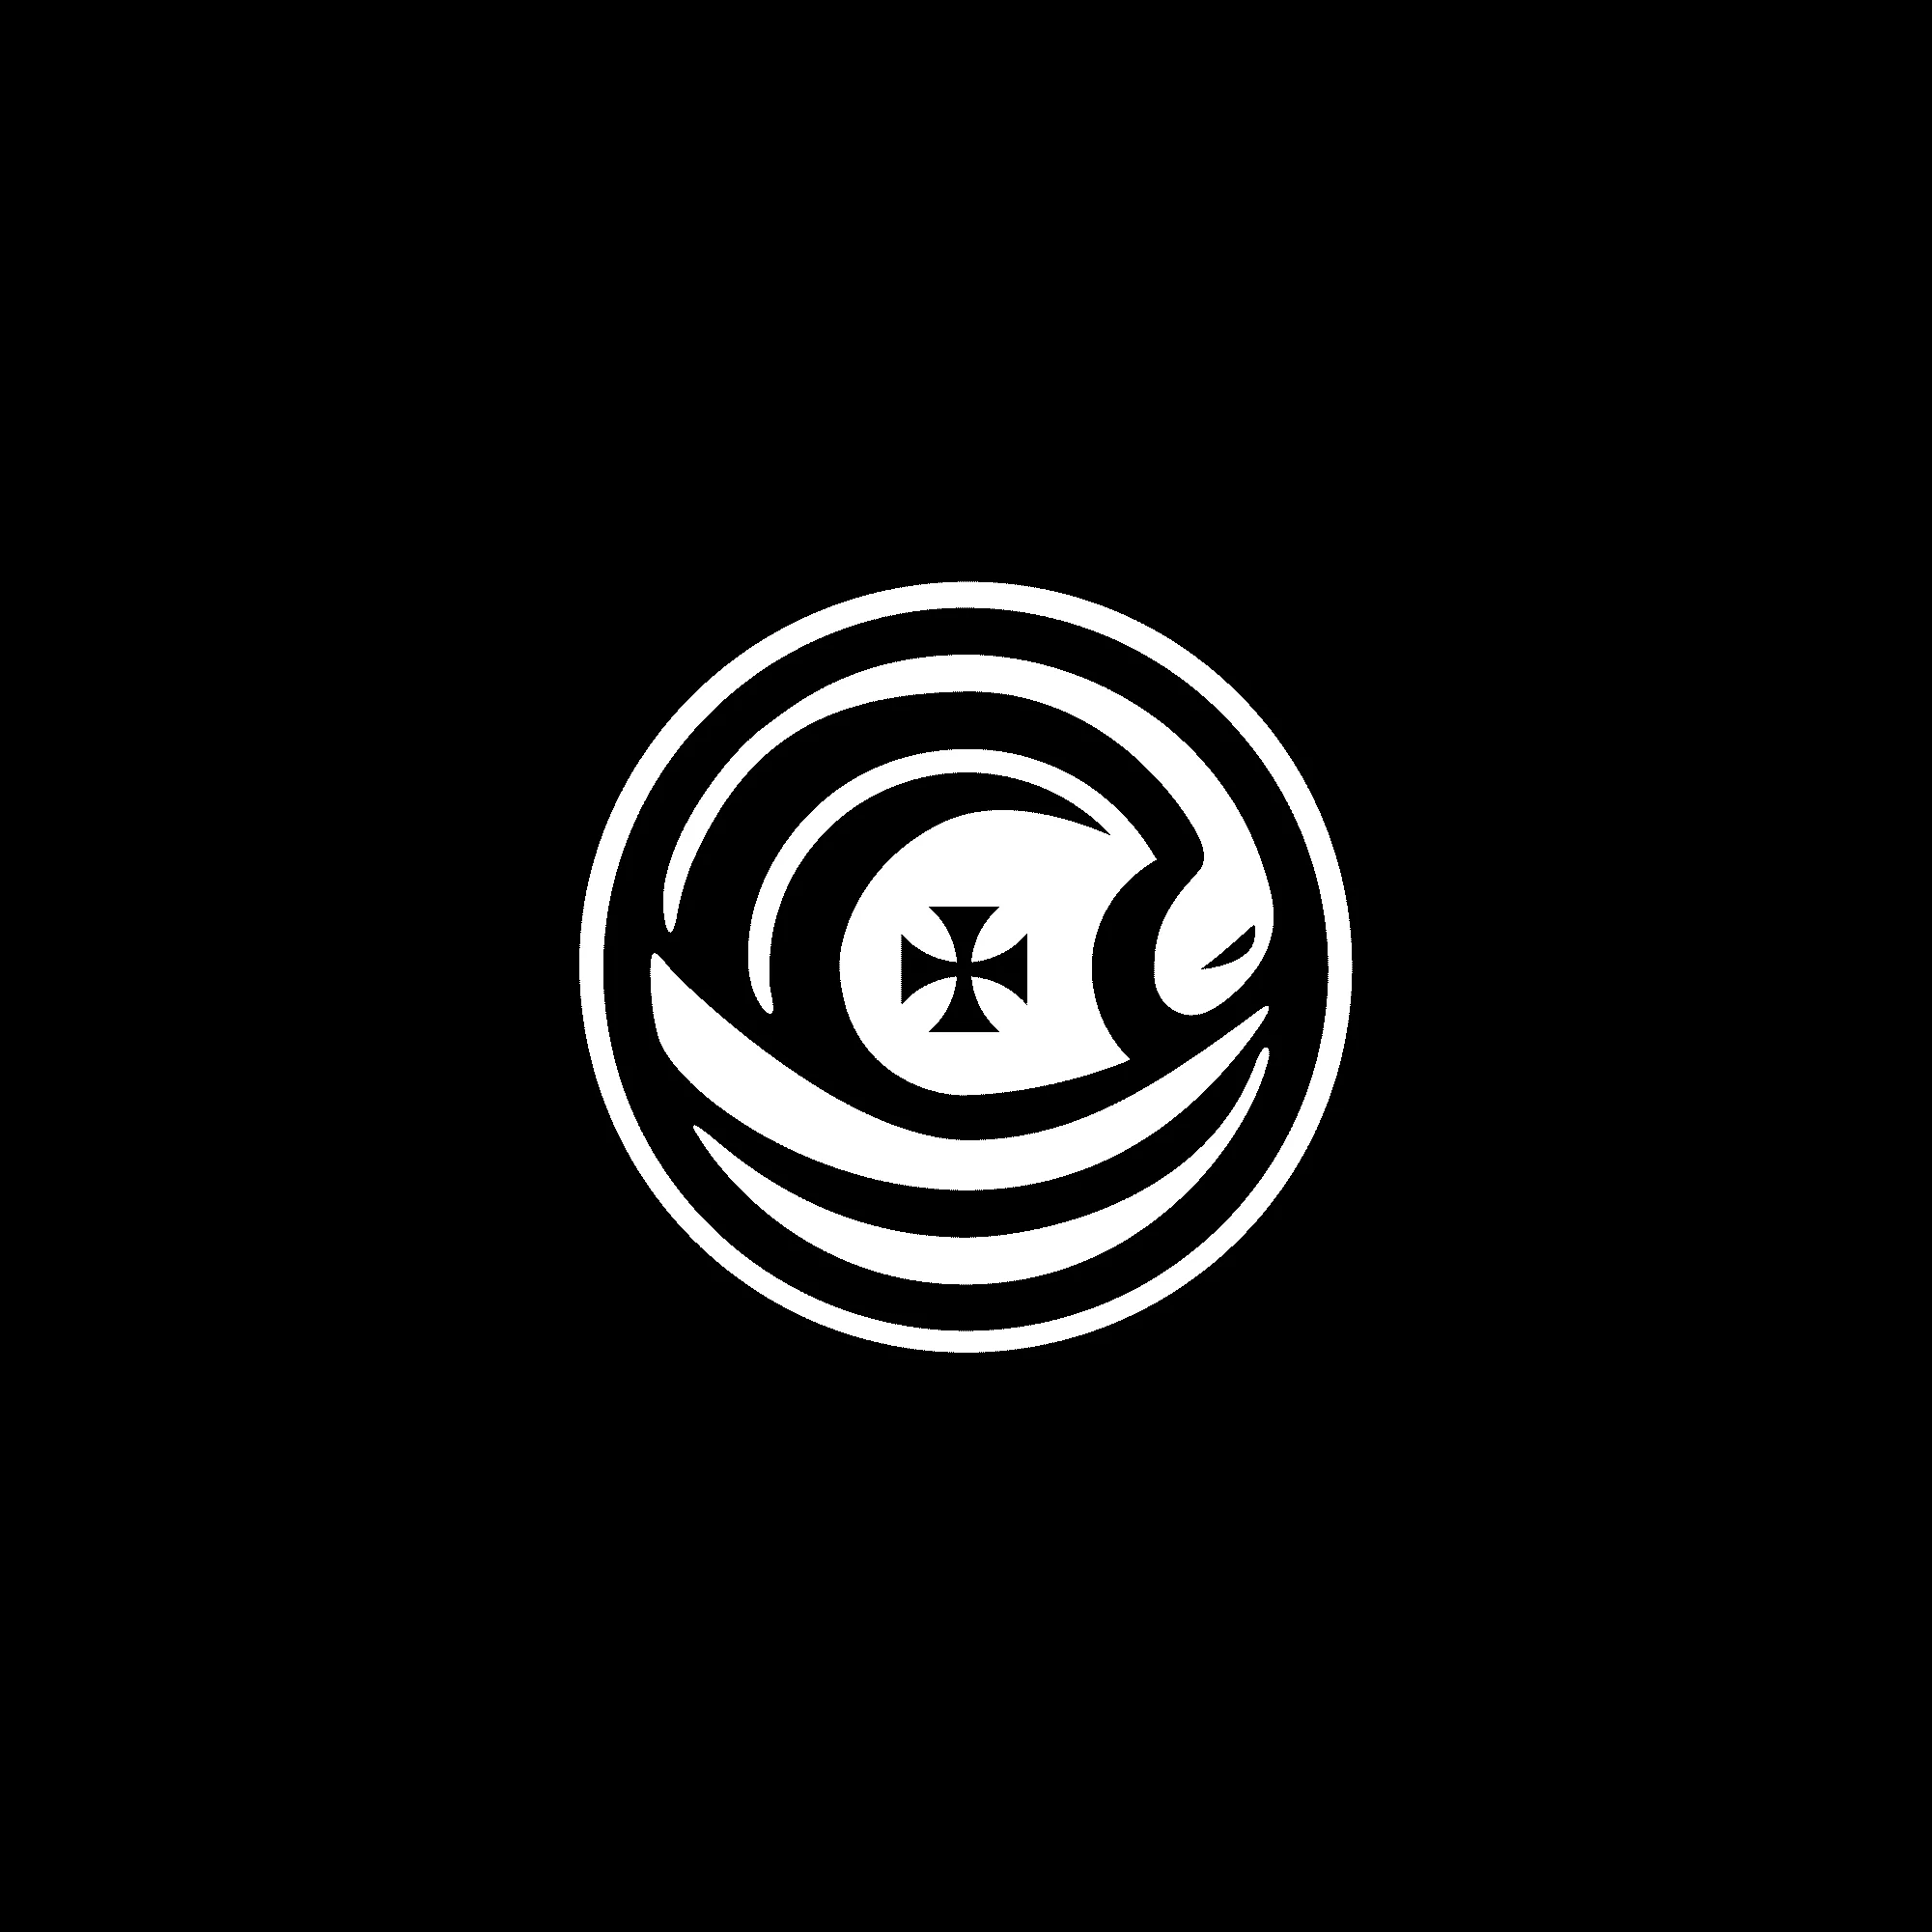 Branding logo design, illustration of ship, snake and eye